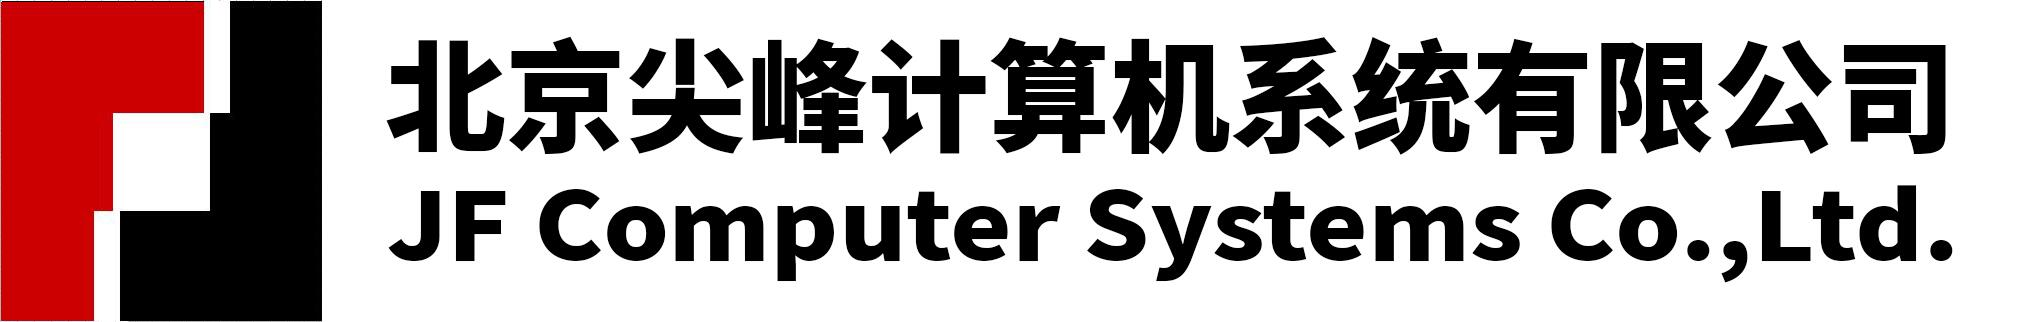 北京尖峰计算机系统有限公司